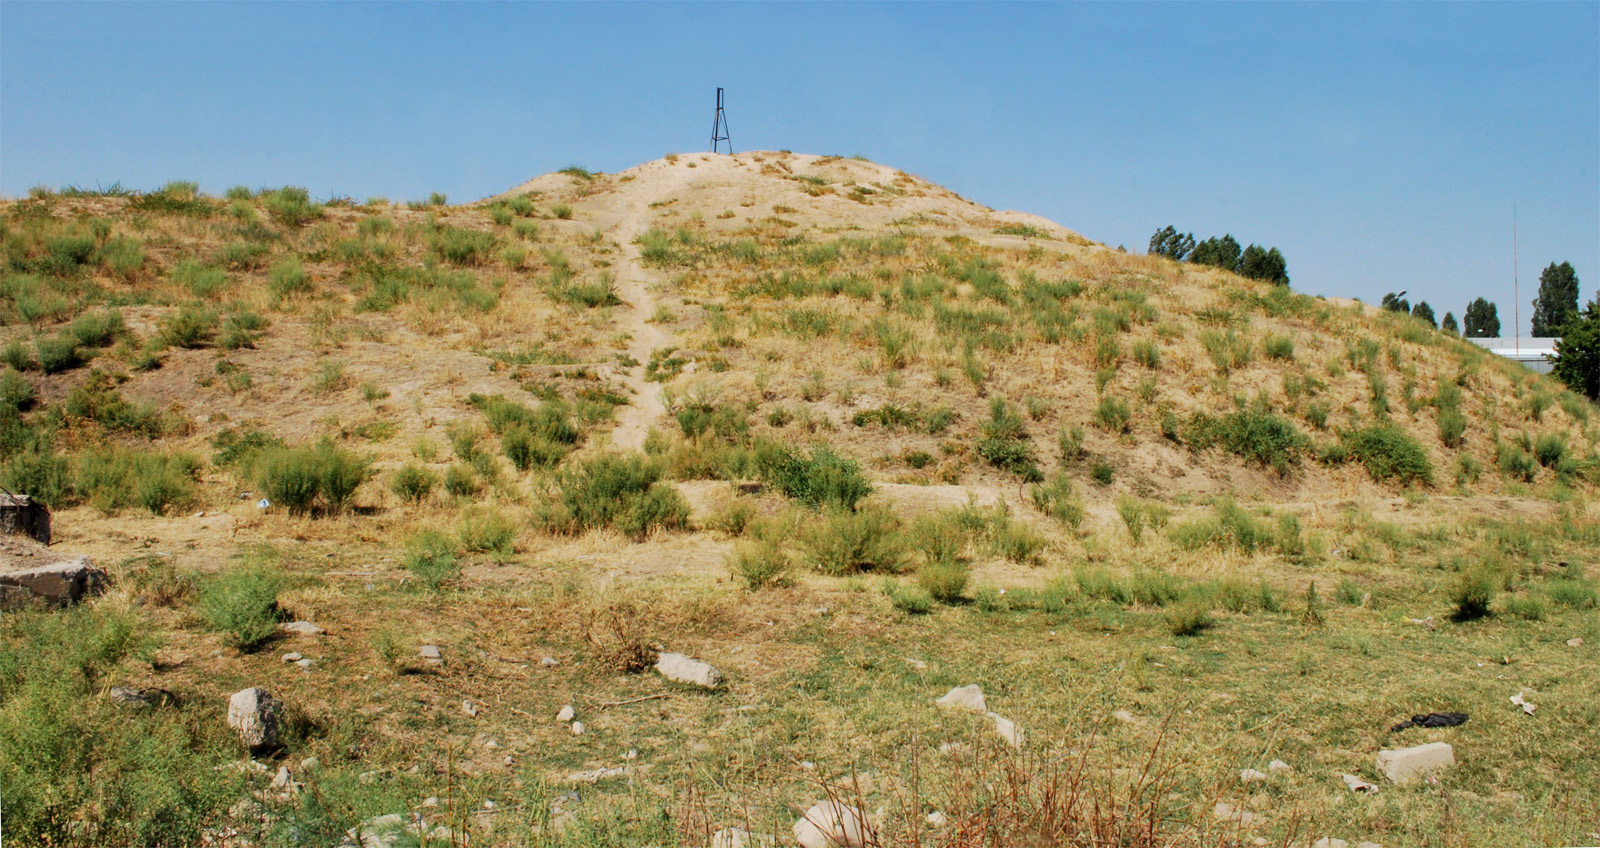 Холм Кулоктепа (Quloqtepa), изображение ландшафта.